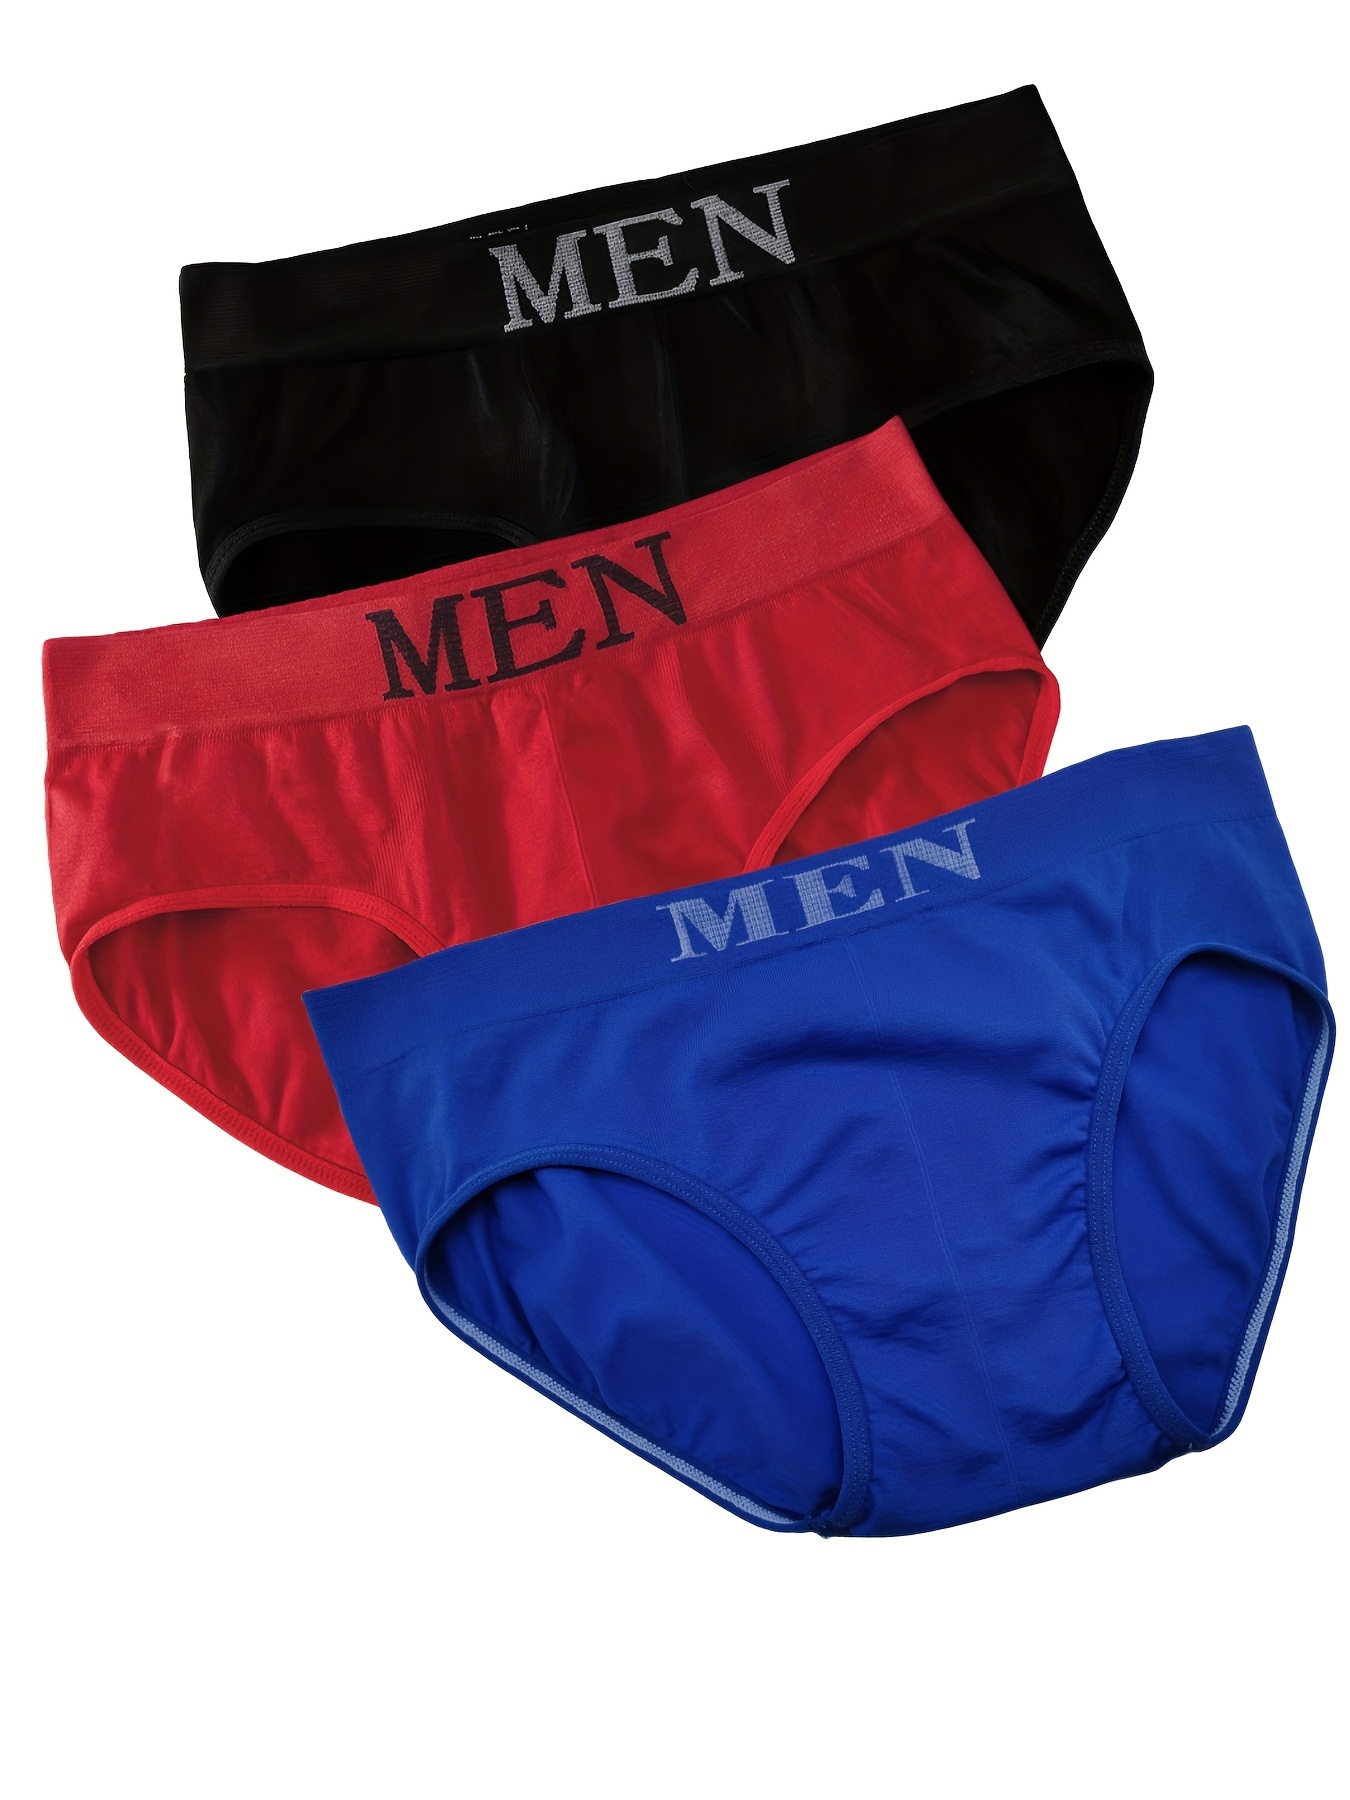 Mens underwear in spandex #mensunderwear #meninunderwear